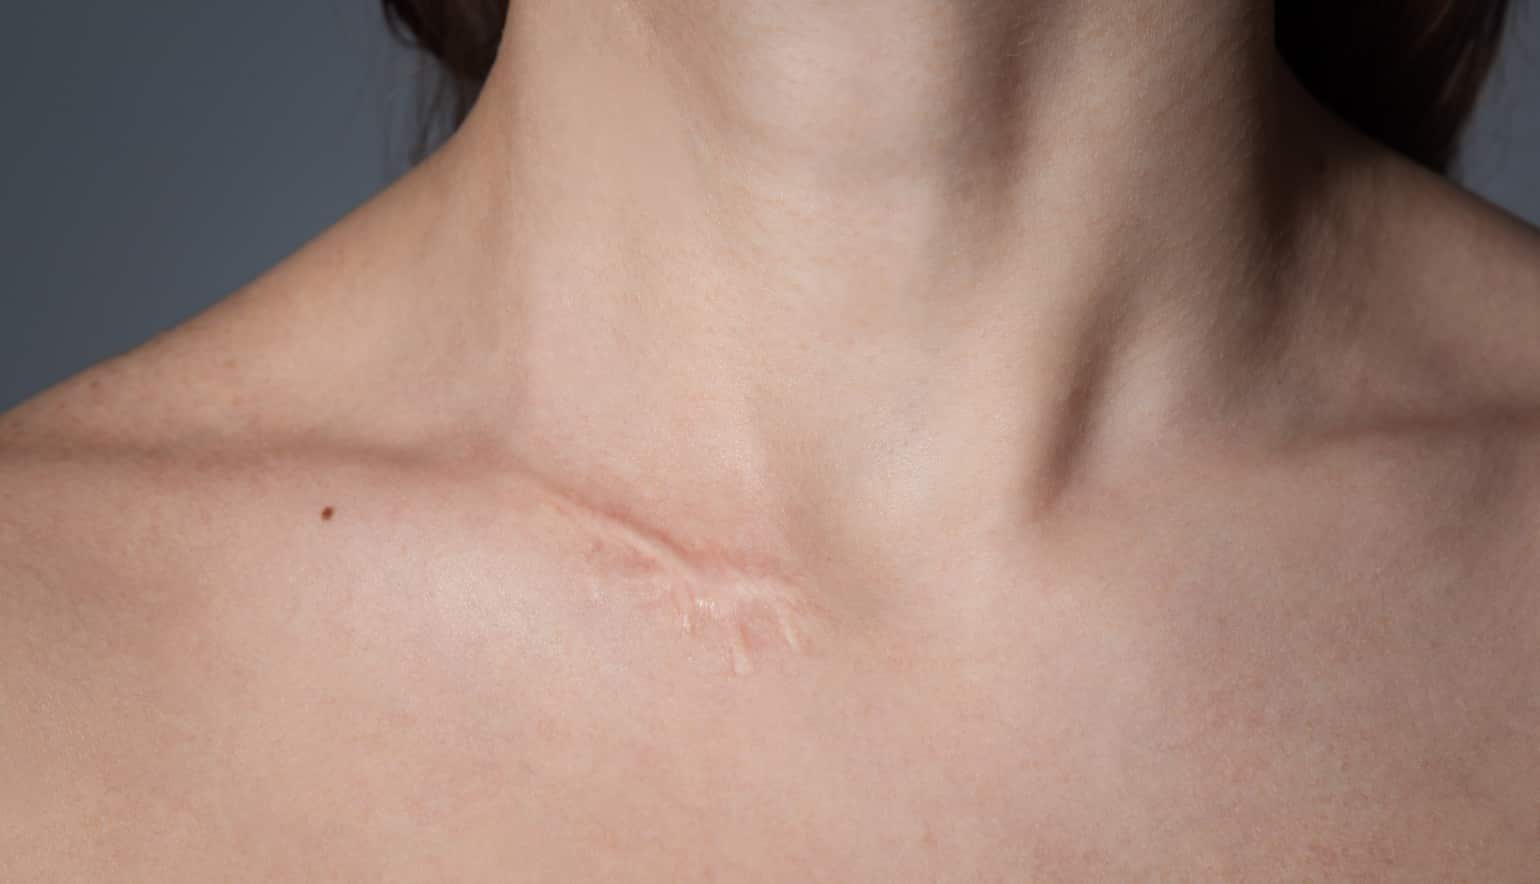 Traiter les cicatrices : traitement laser | Technique | Paris | Dr Louafi